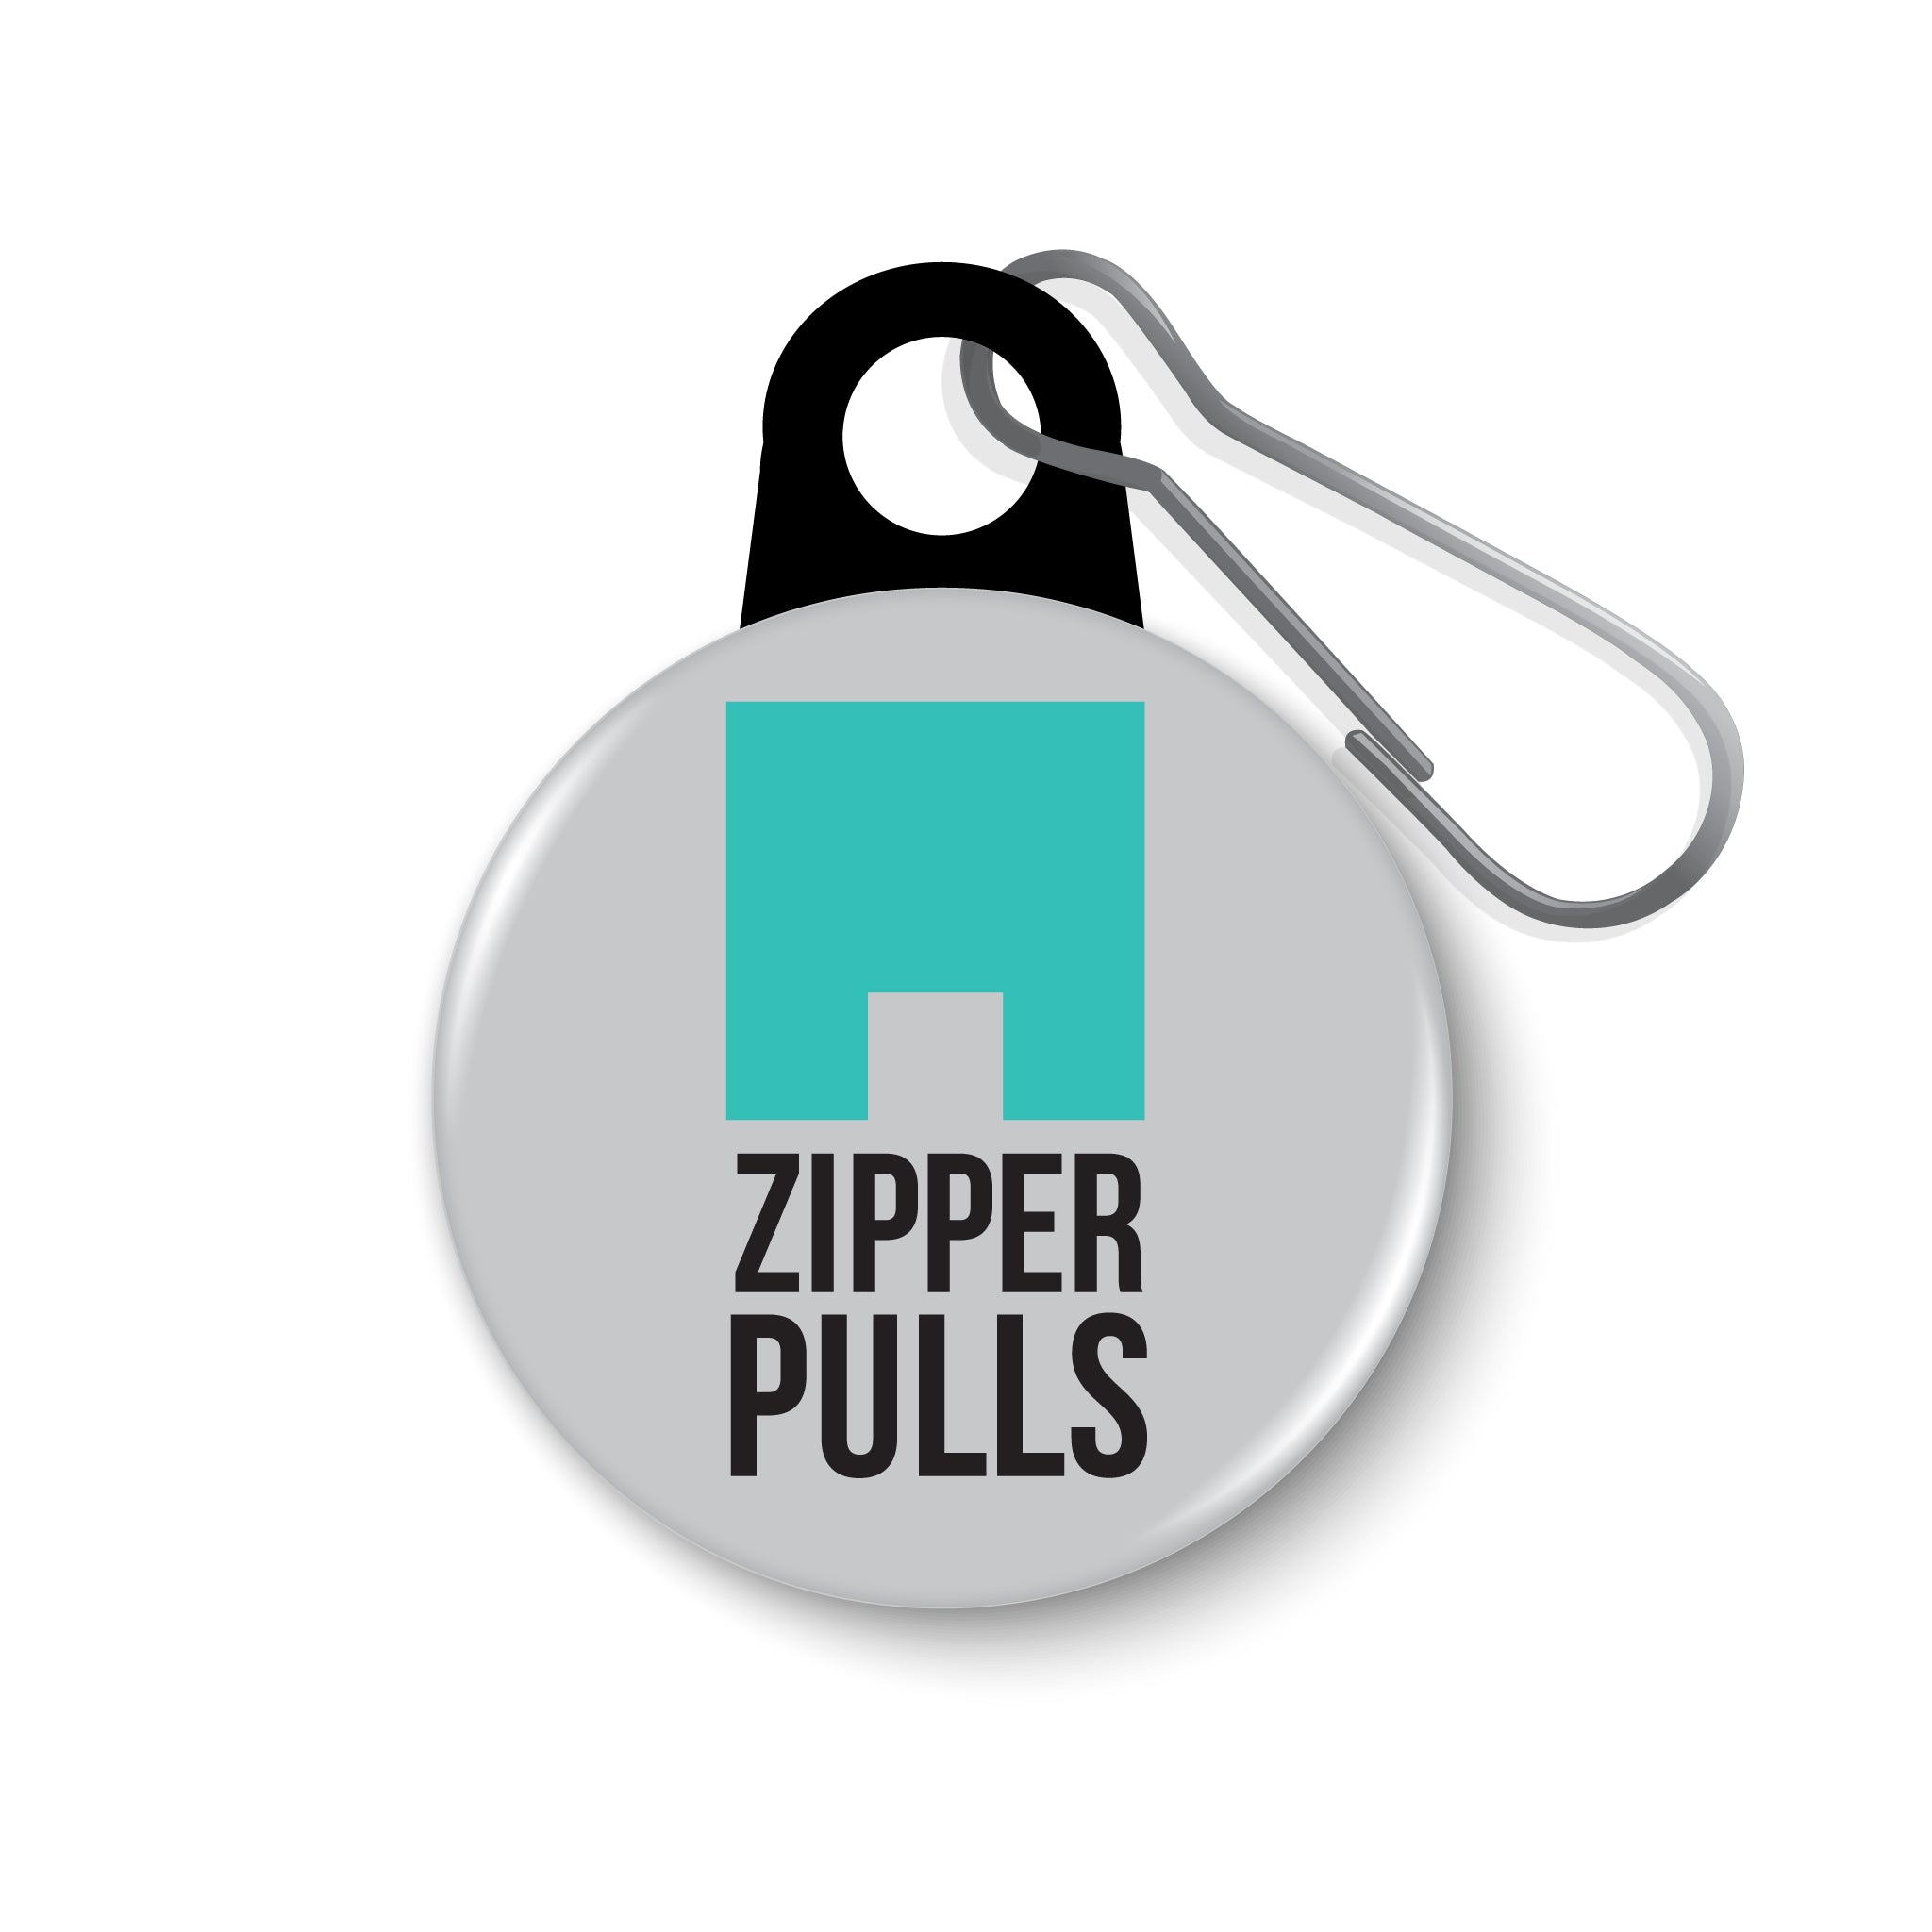 1" Zipper Pulls